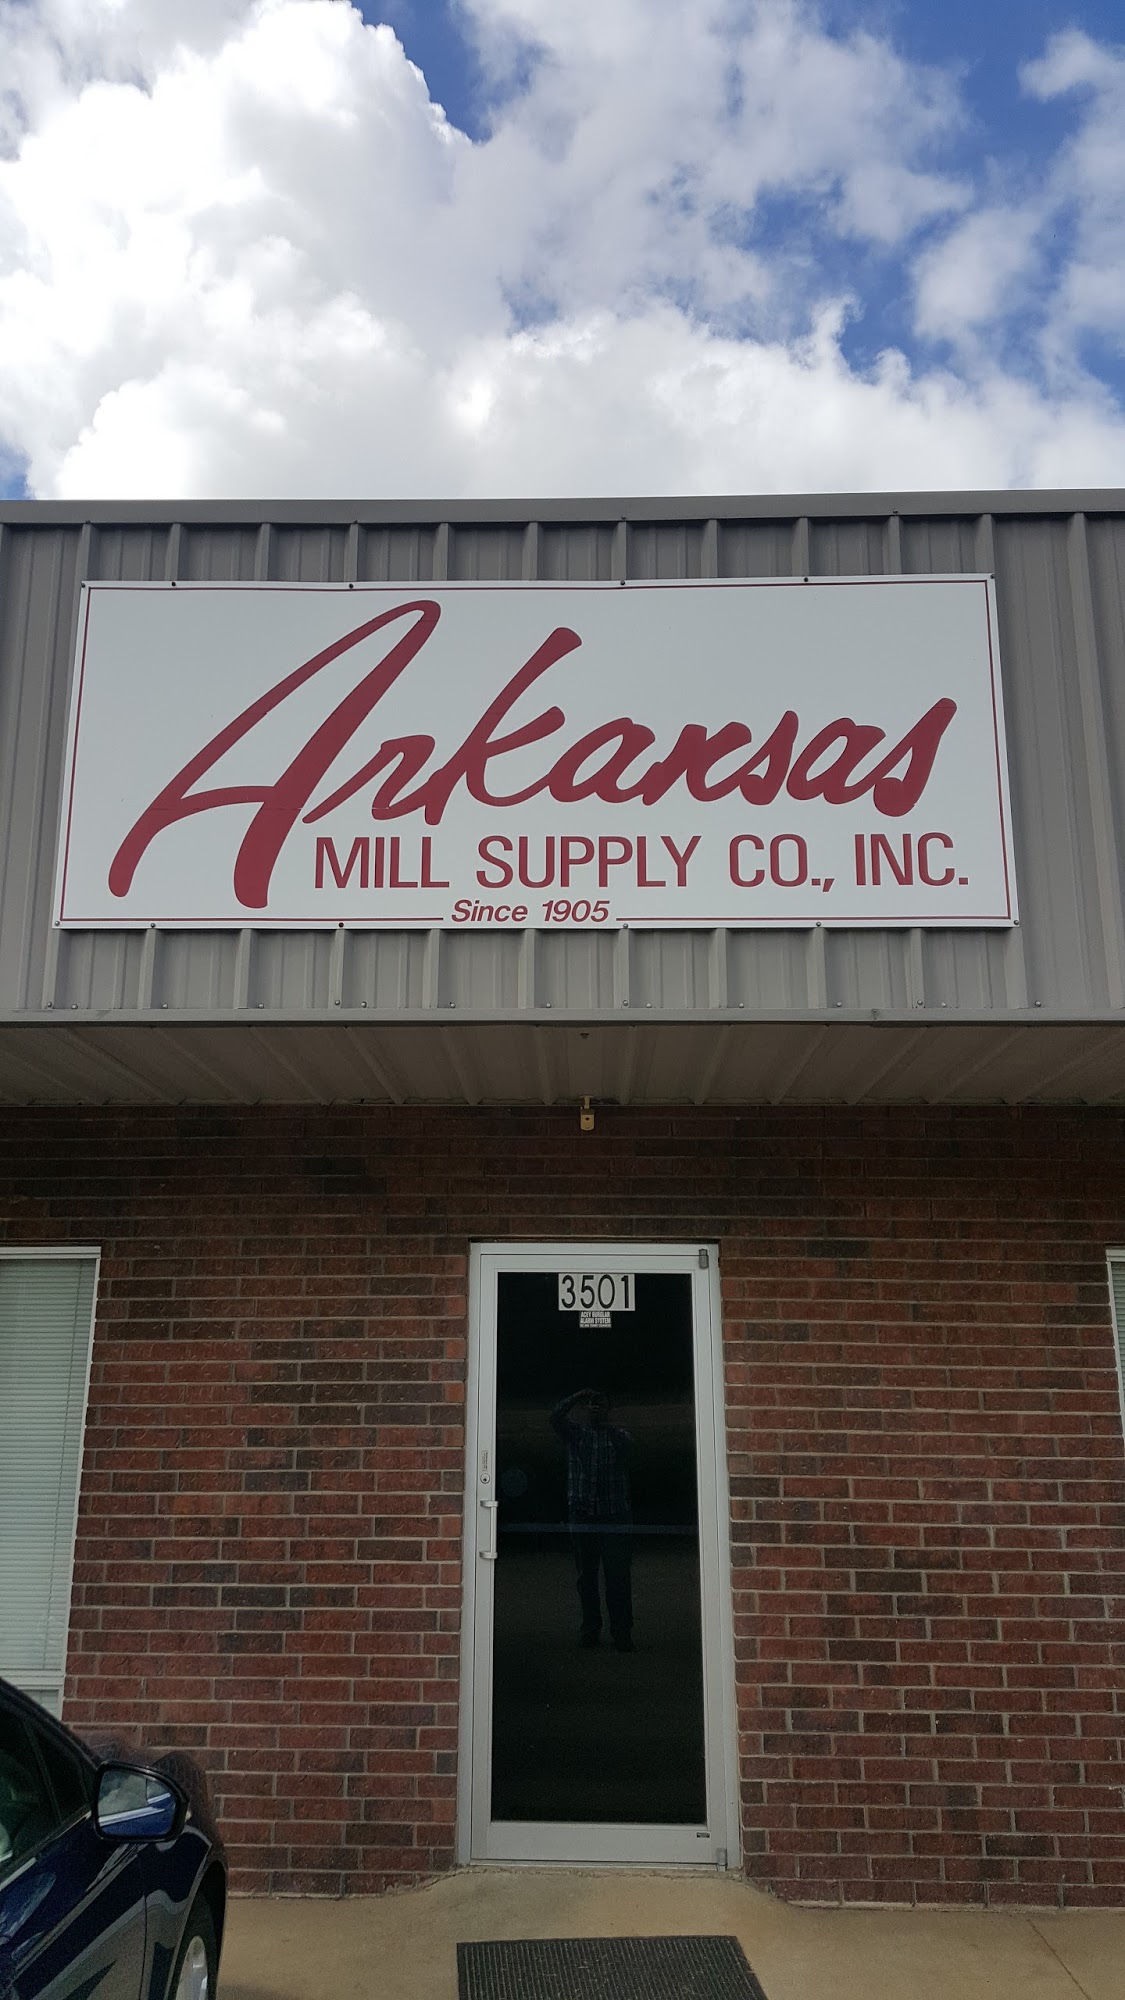 Arkansas Mill Supply